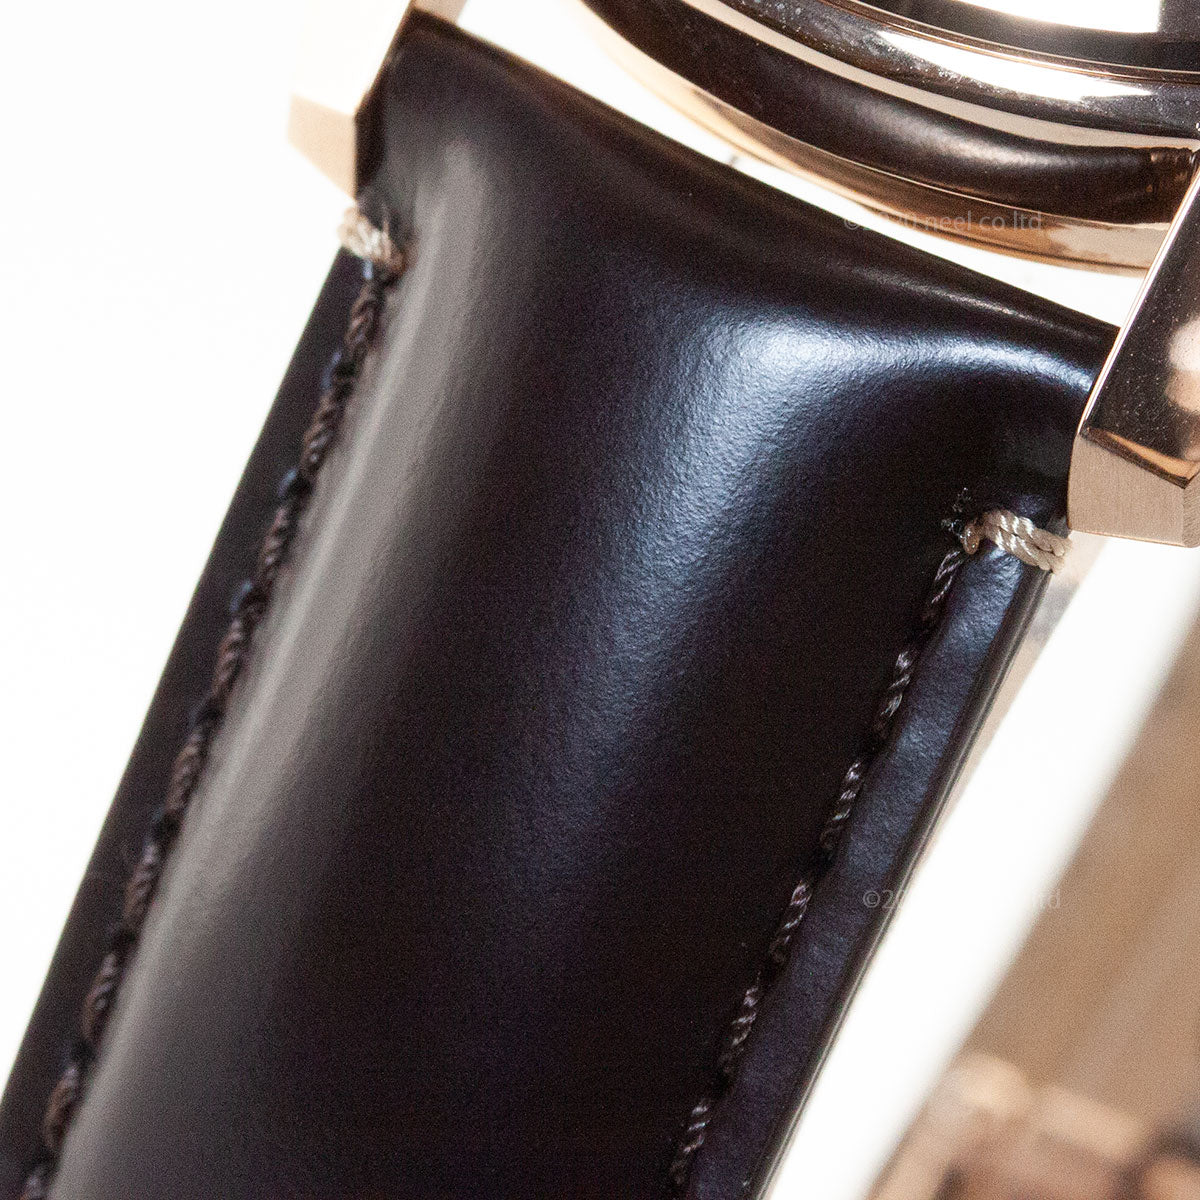 セイコー プレザージュ SEIKO PRESAGE 自動巻き メカニカル コアショップ専用モデル 腕時計 メンズ プレステージライン SARX080